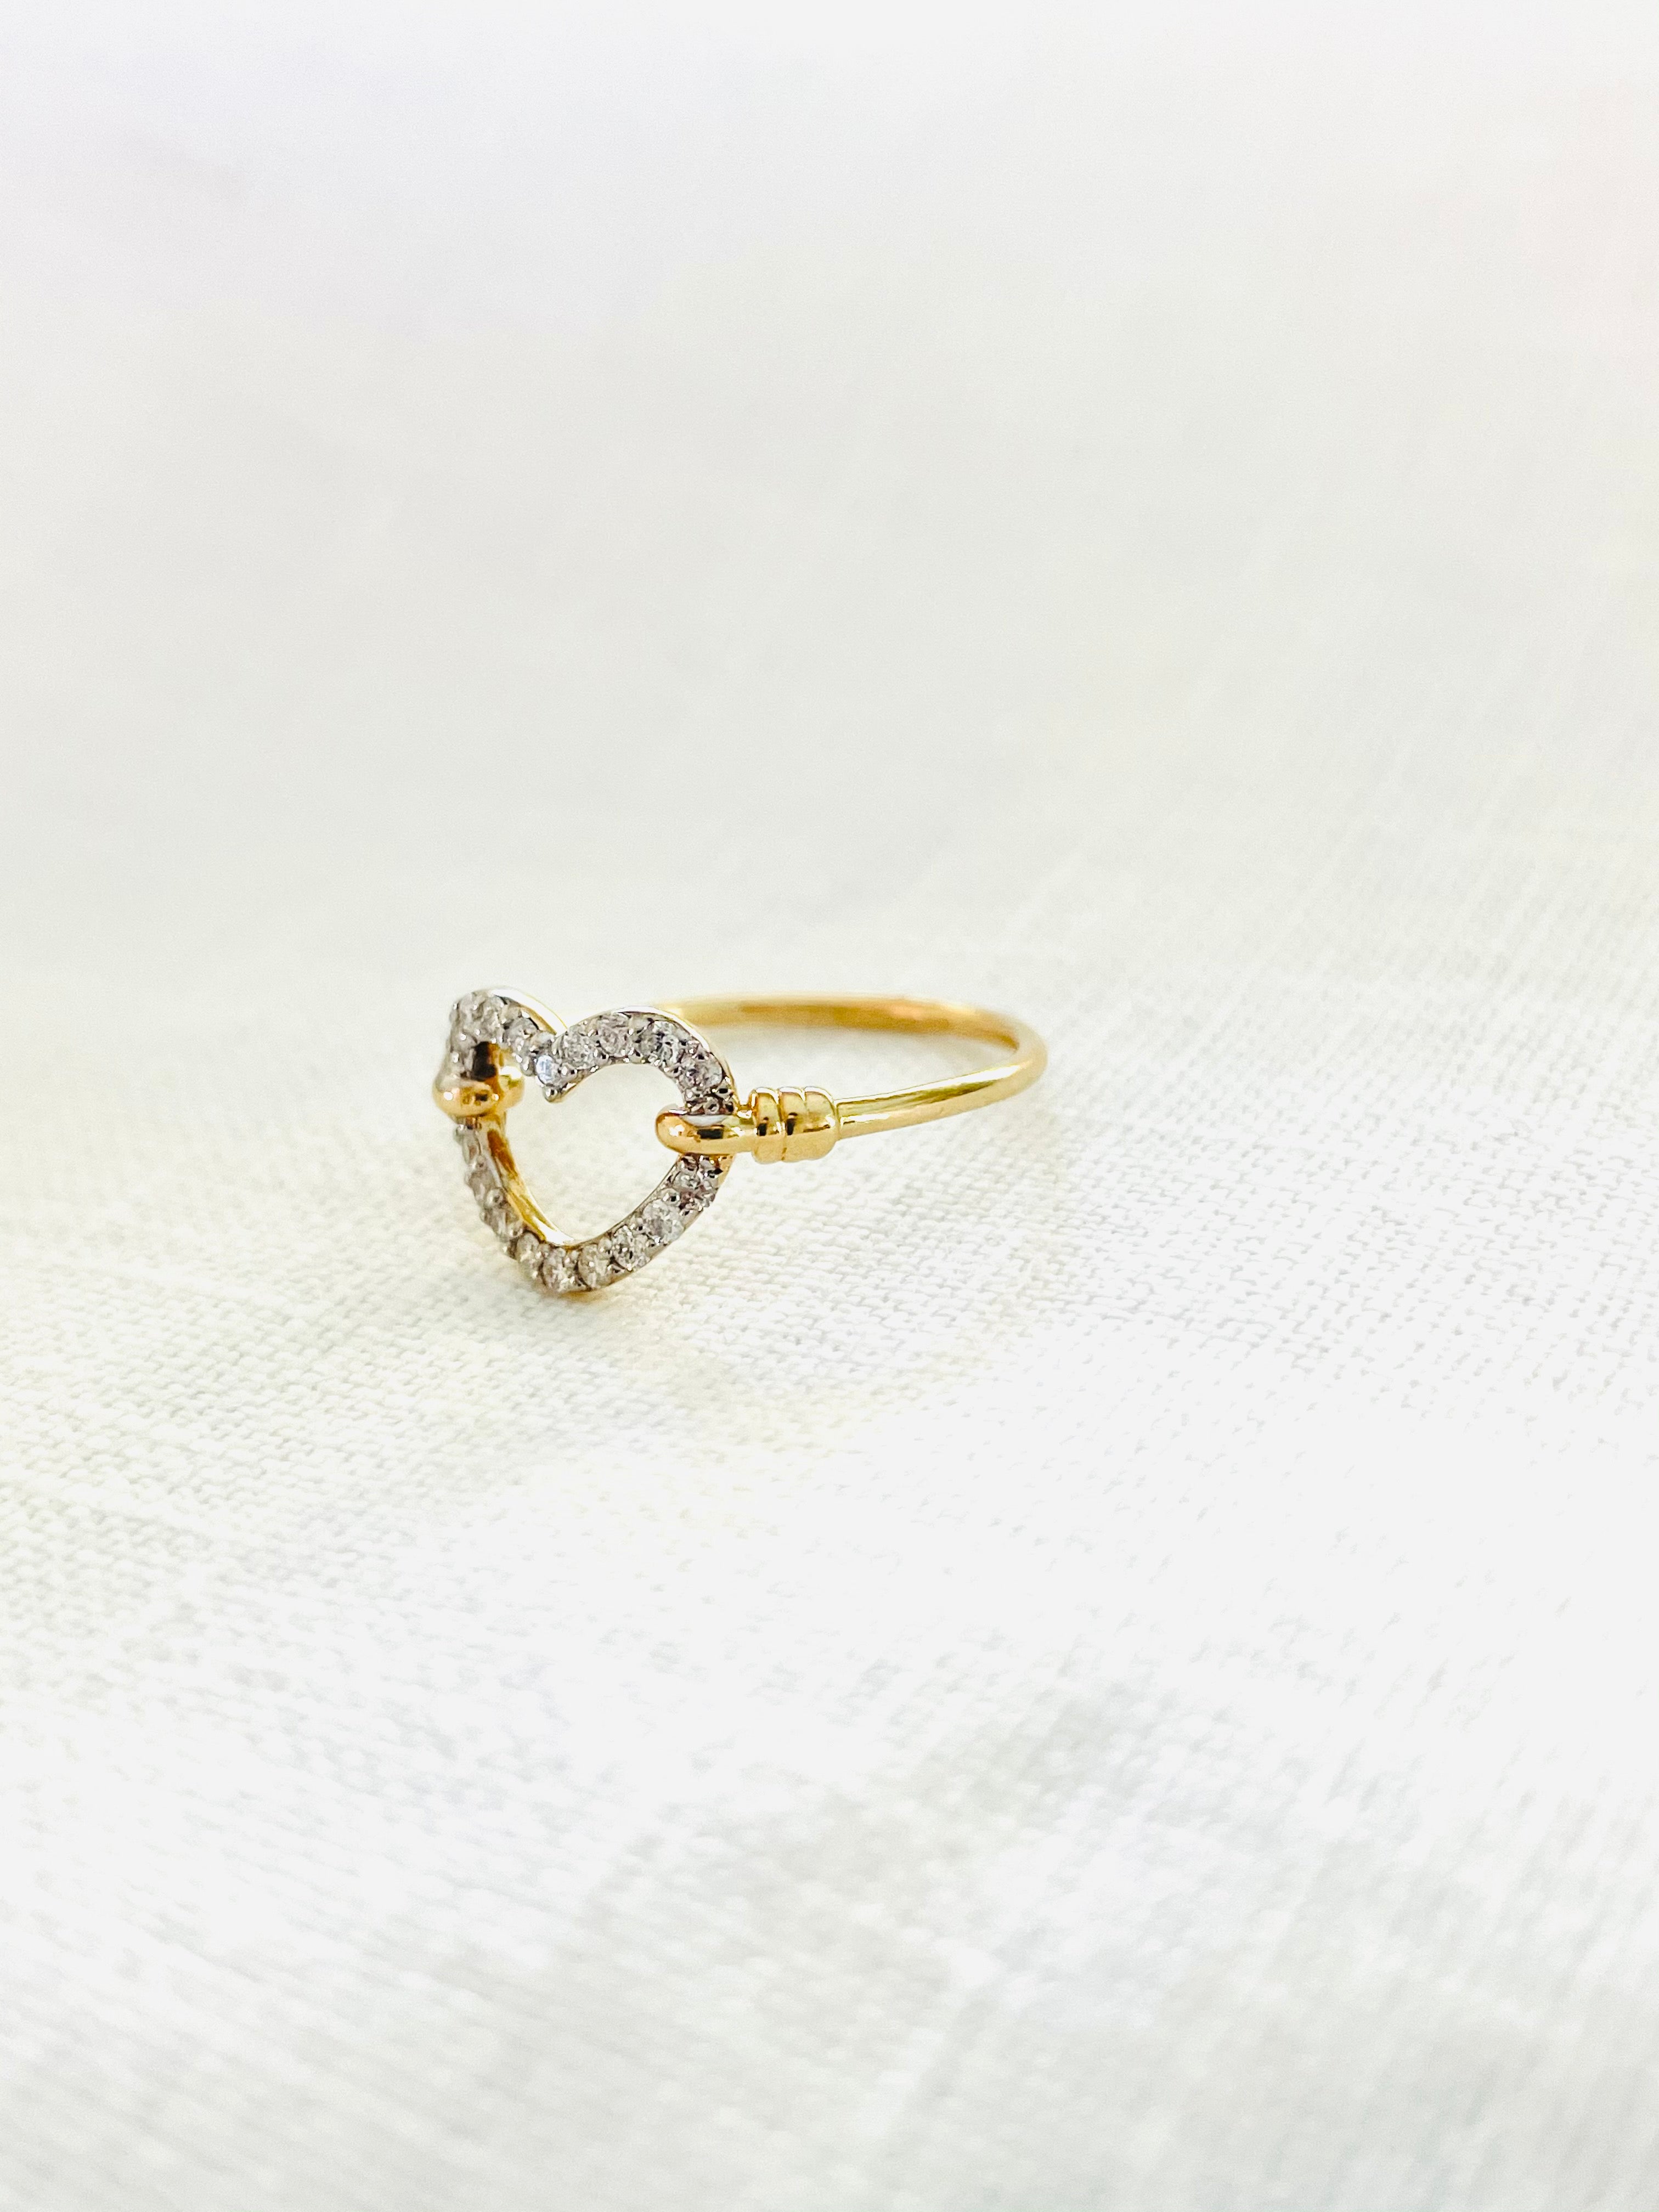 The Open Heart Diamond Ring